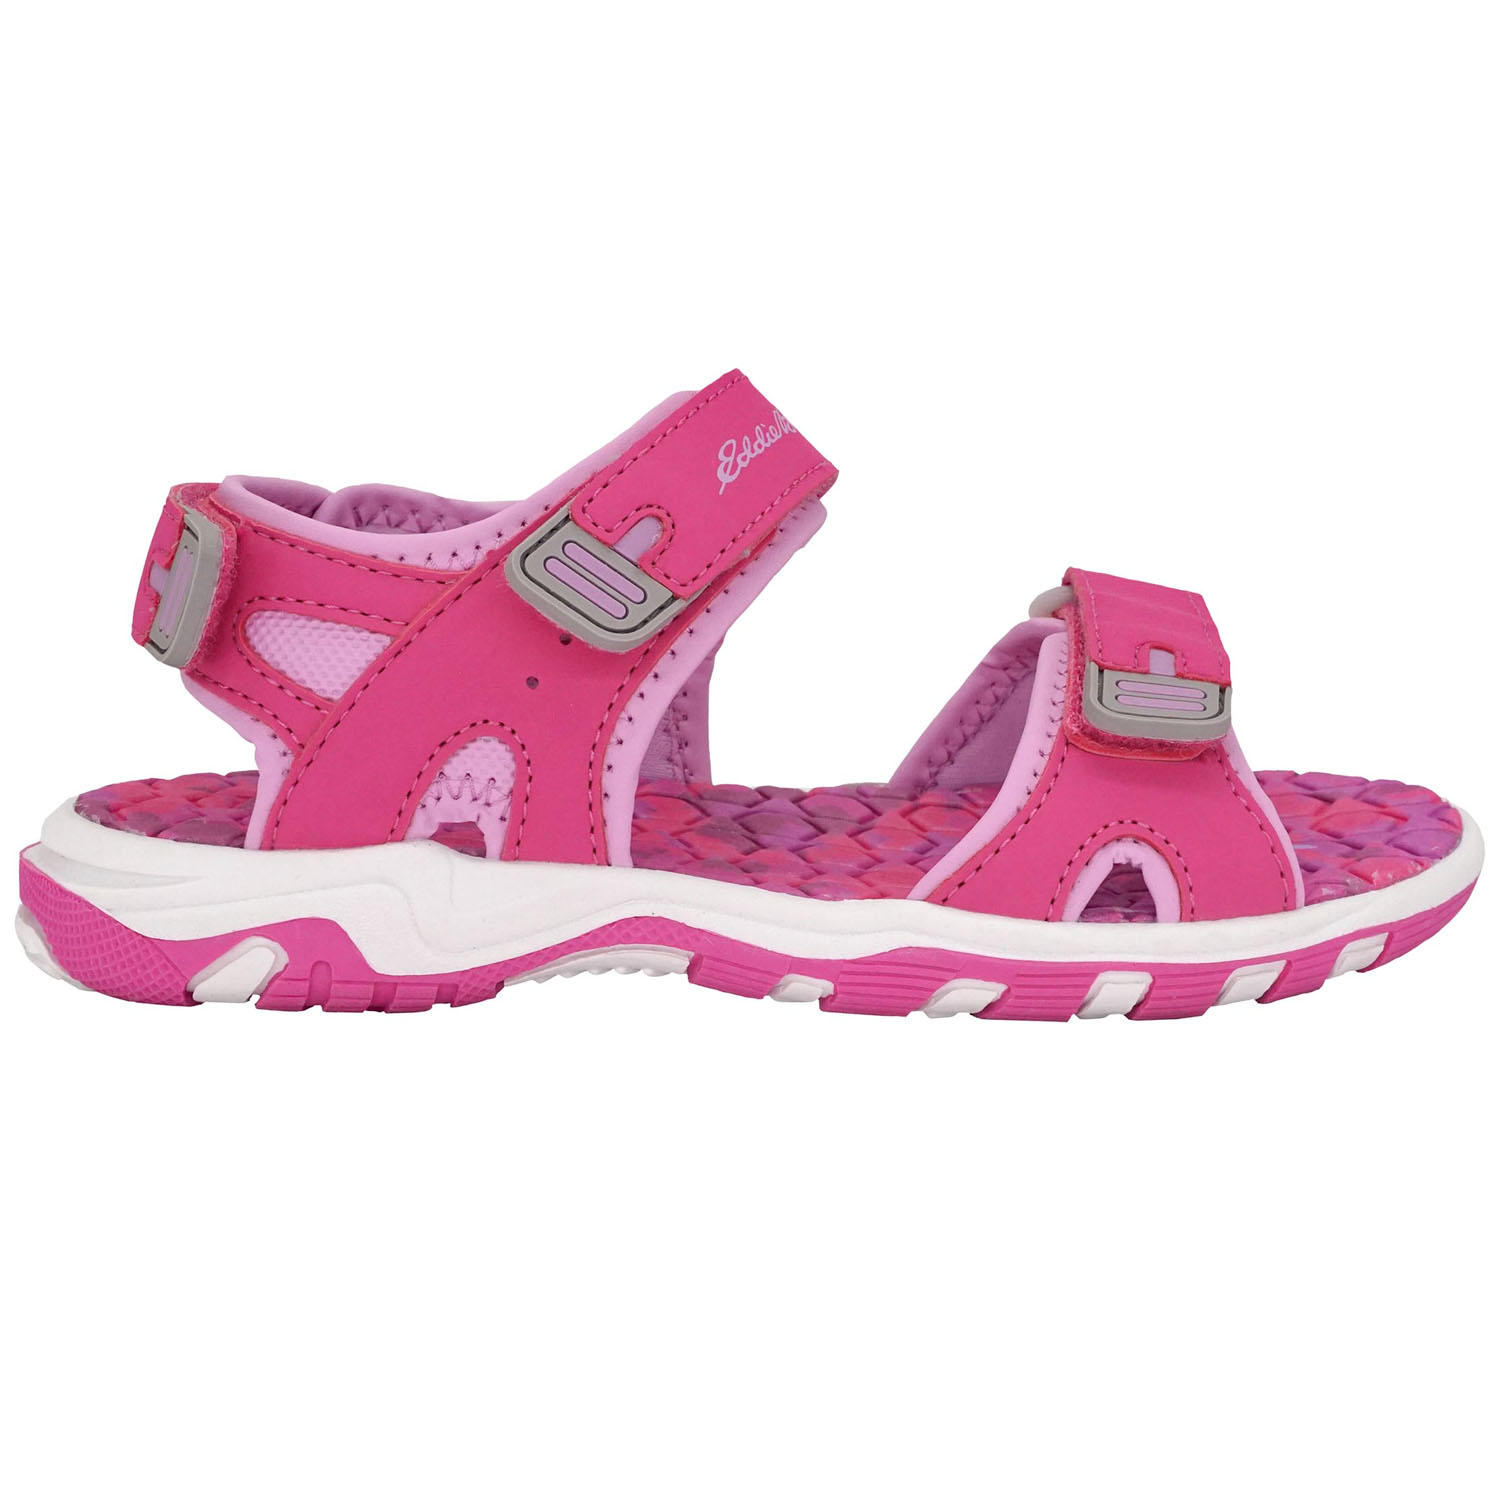 Eddie Bauer Girl's River Sandals (Size 12-4) (Hot Pink Tie-Dye)